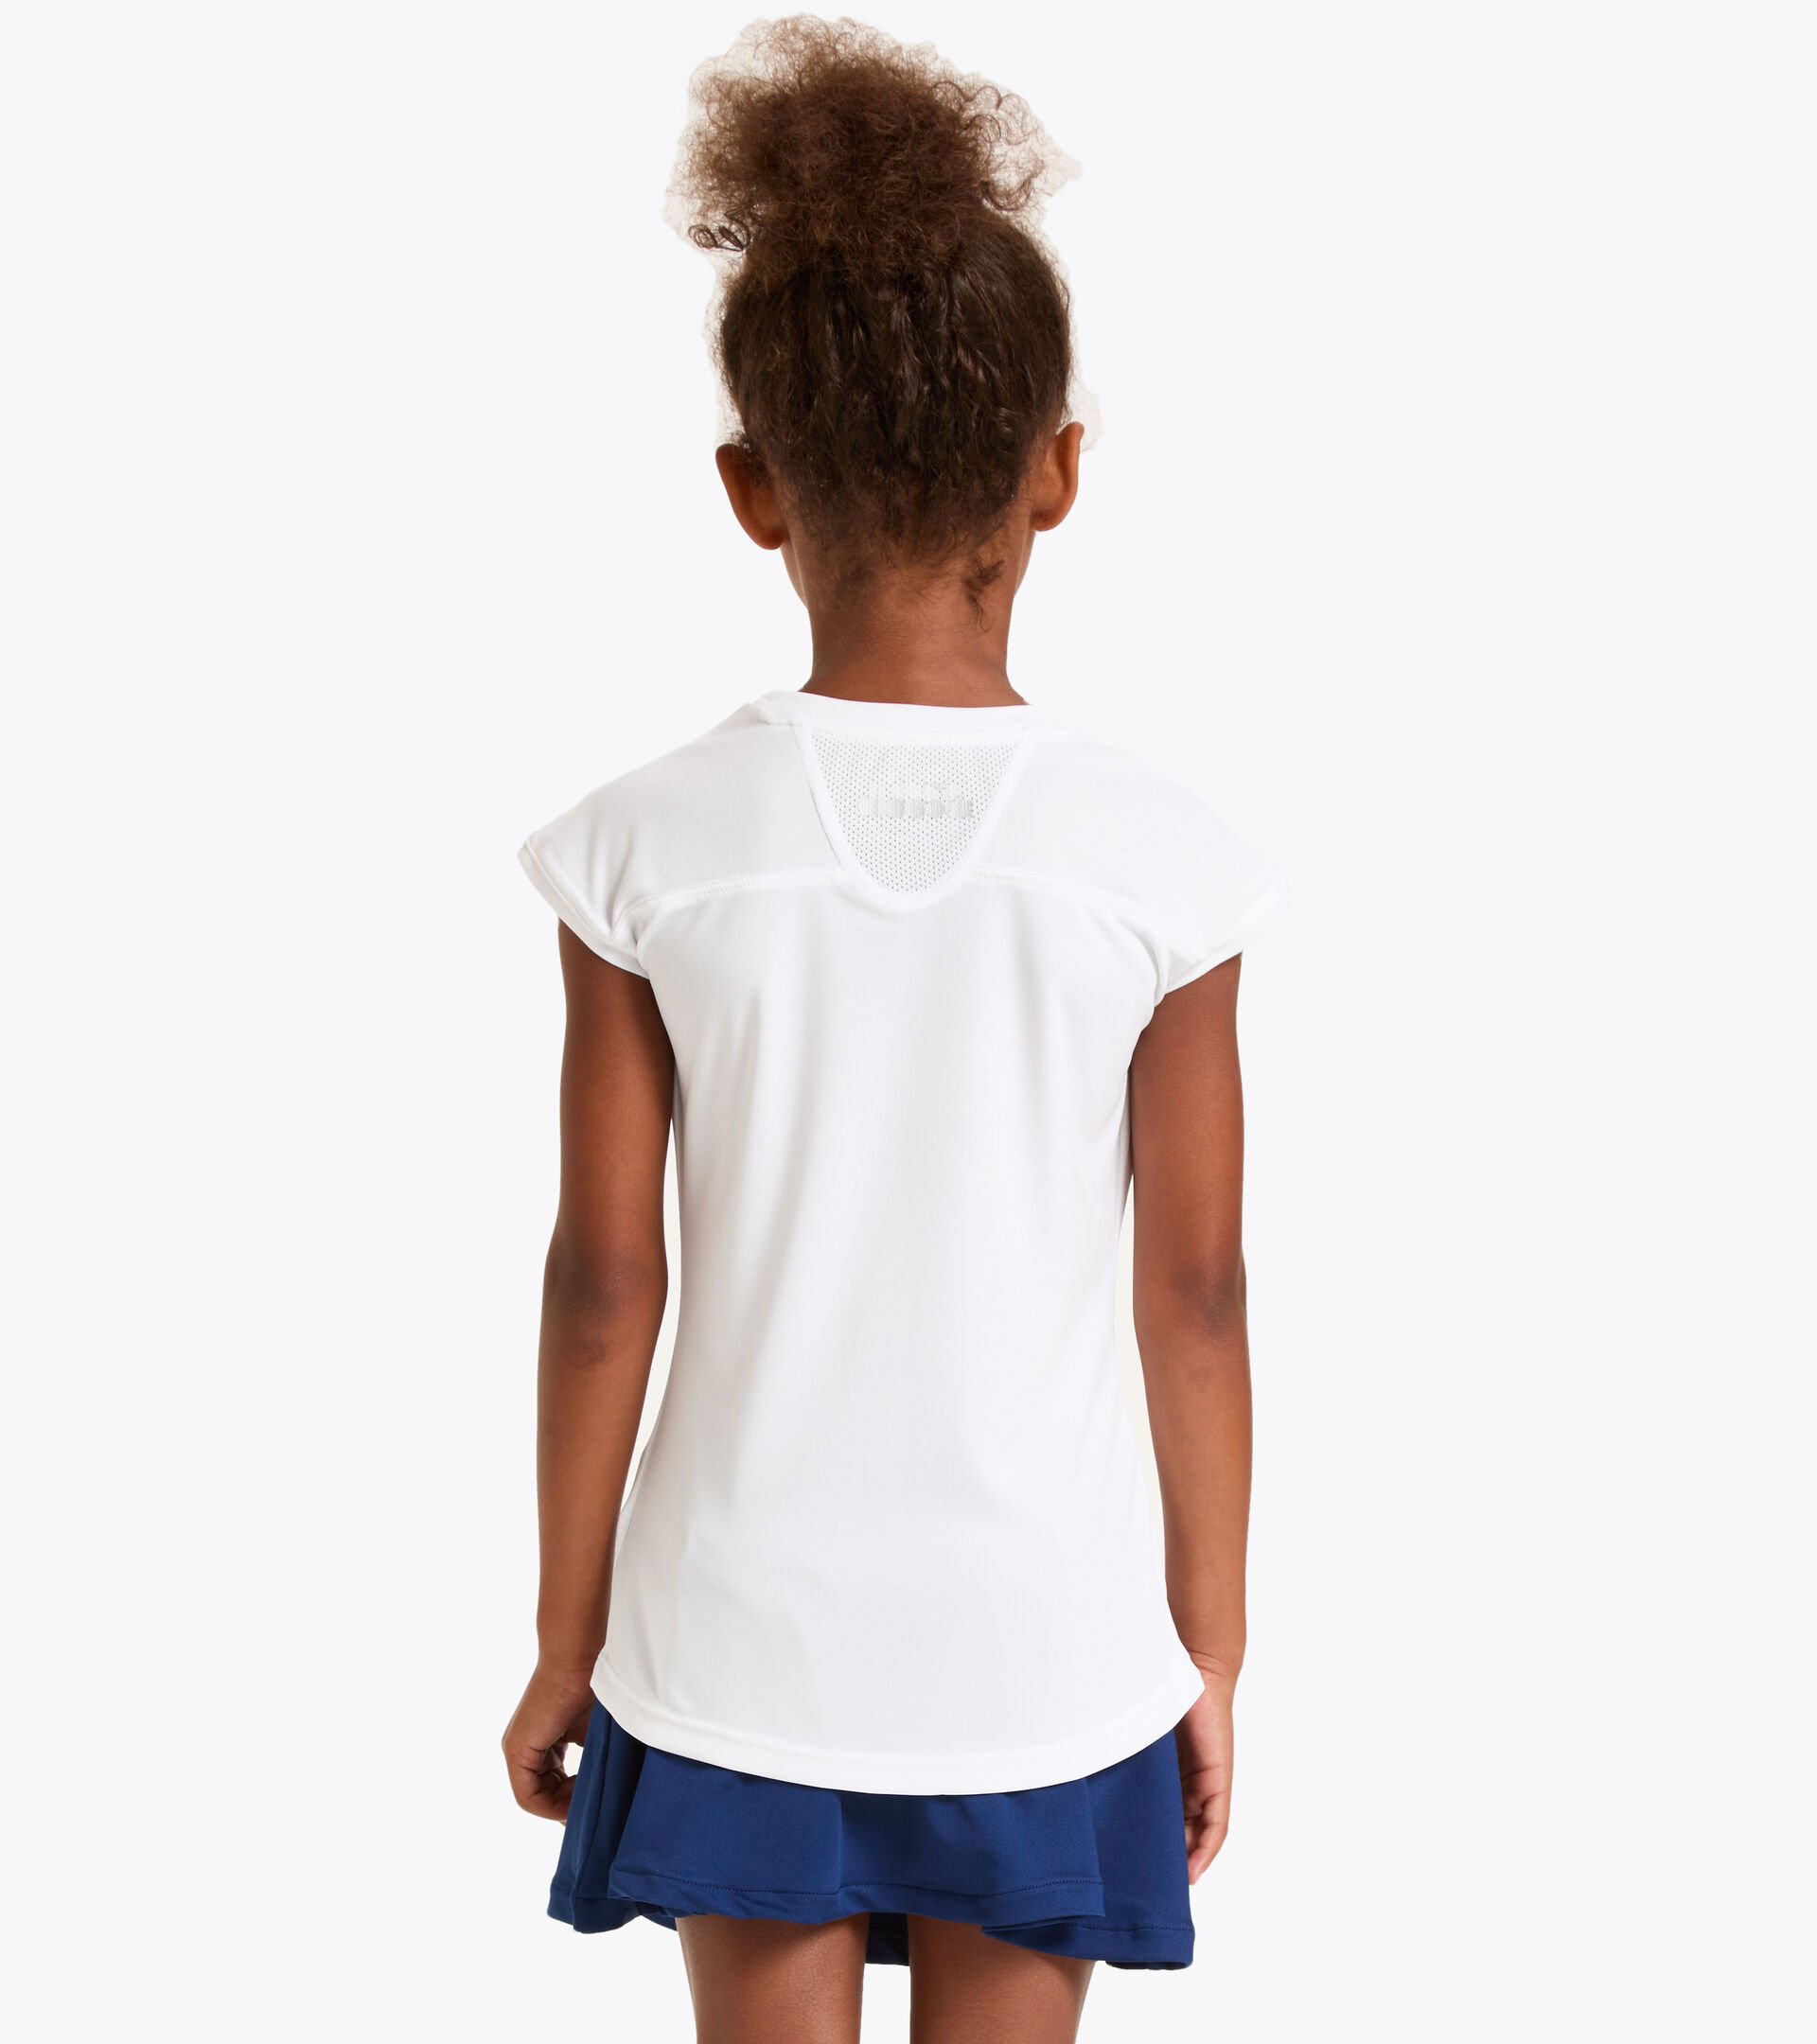 Tennis T-shirt - Junior G. T-SHIRT TEAM OPTICAL WHITE - Diadora